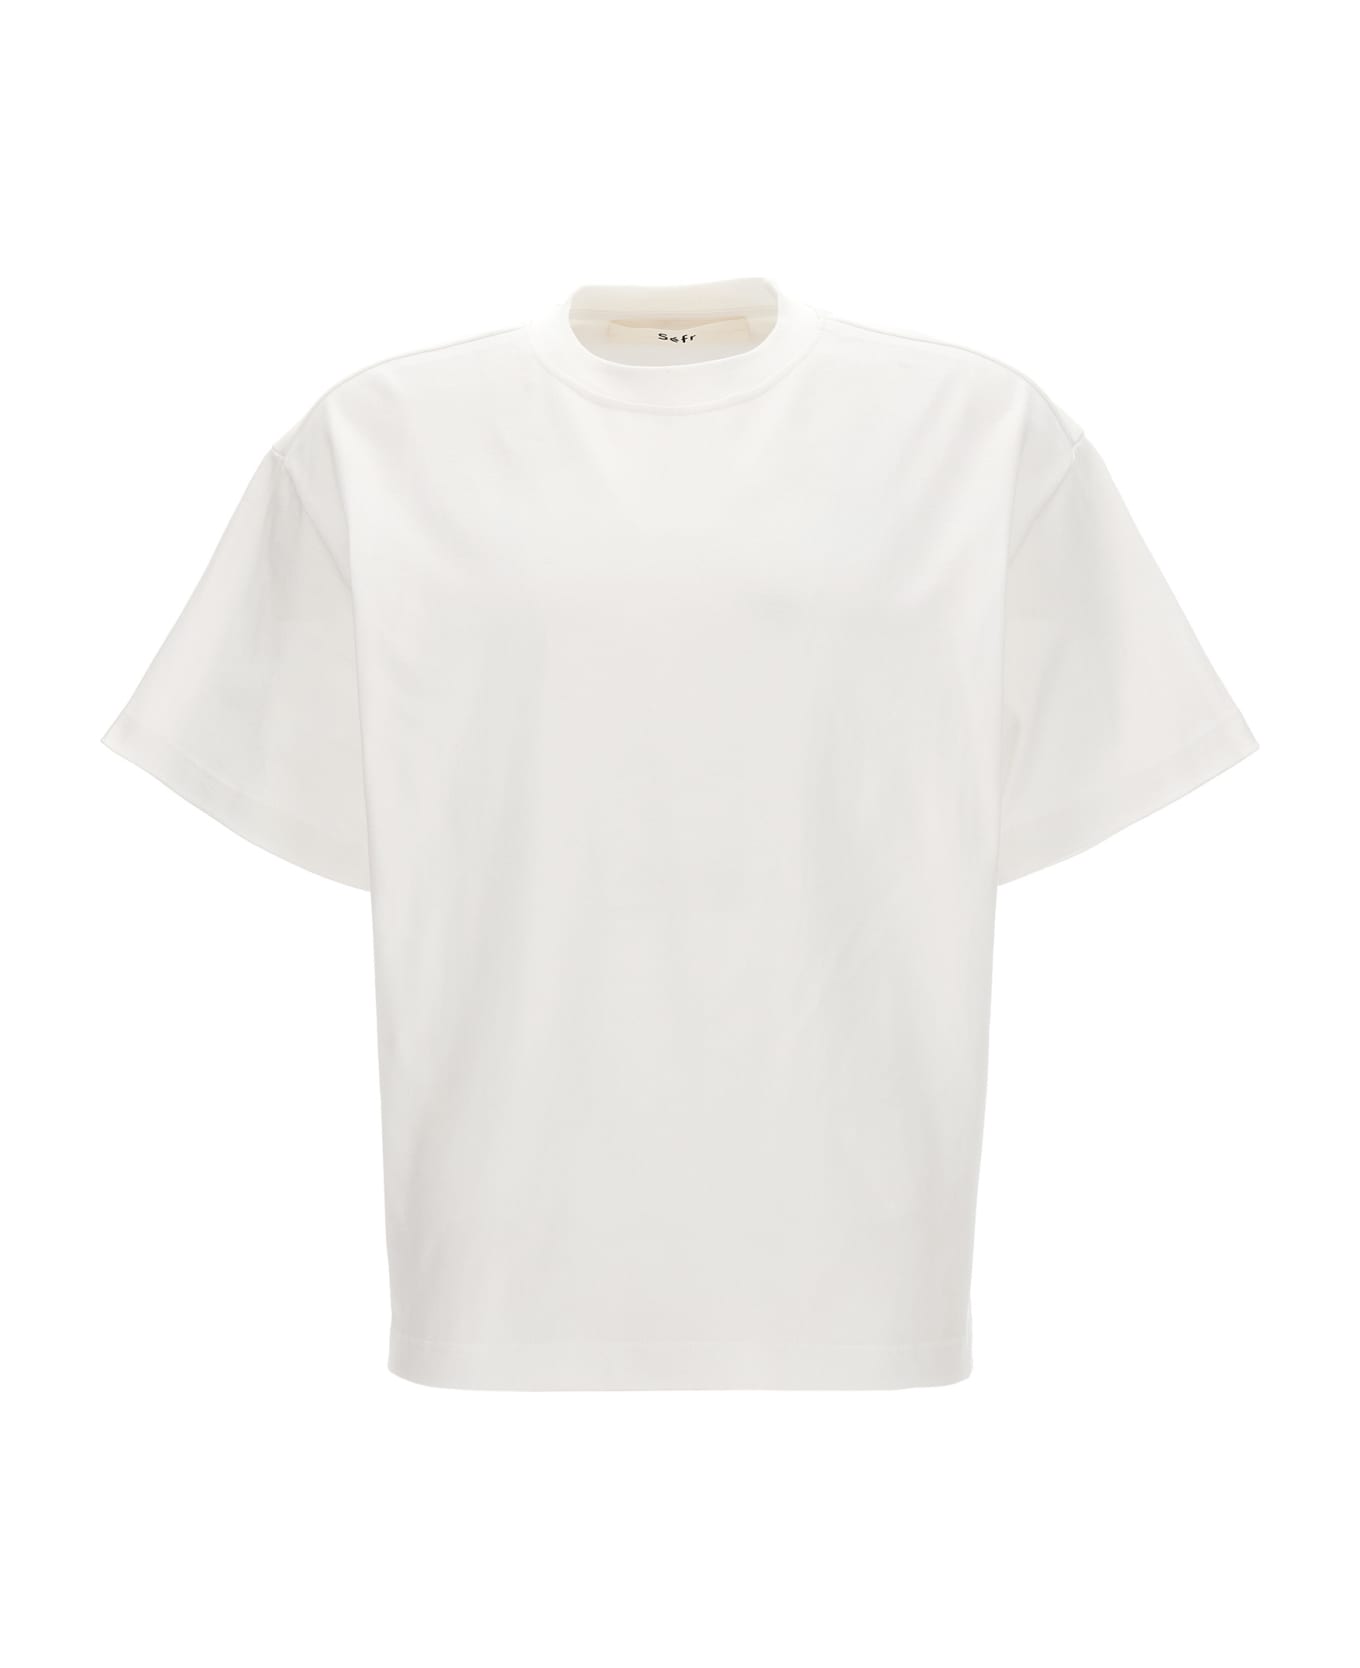 Séfr 'atelier' T-shirt - White